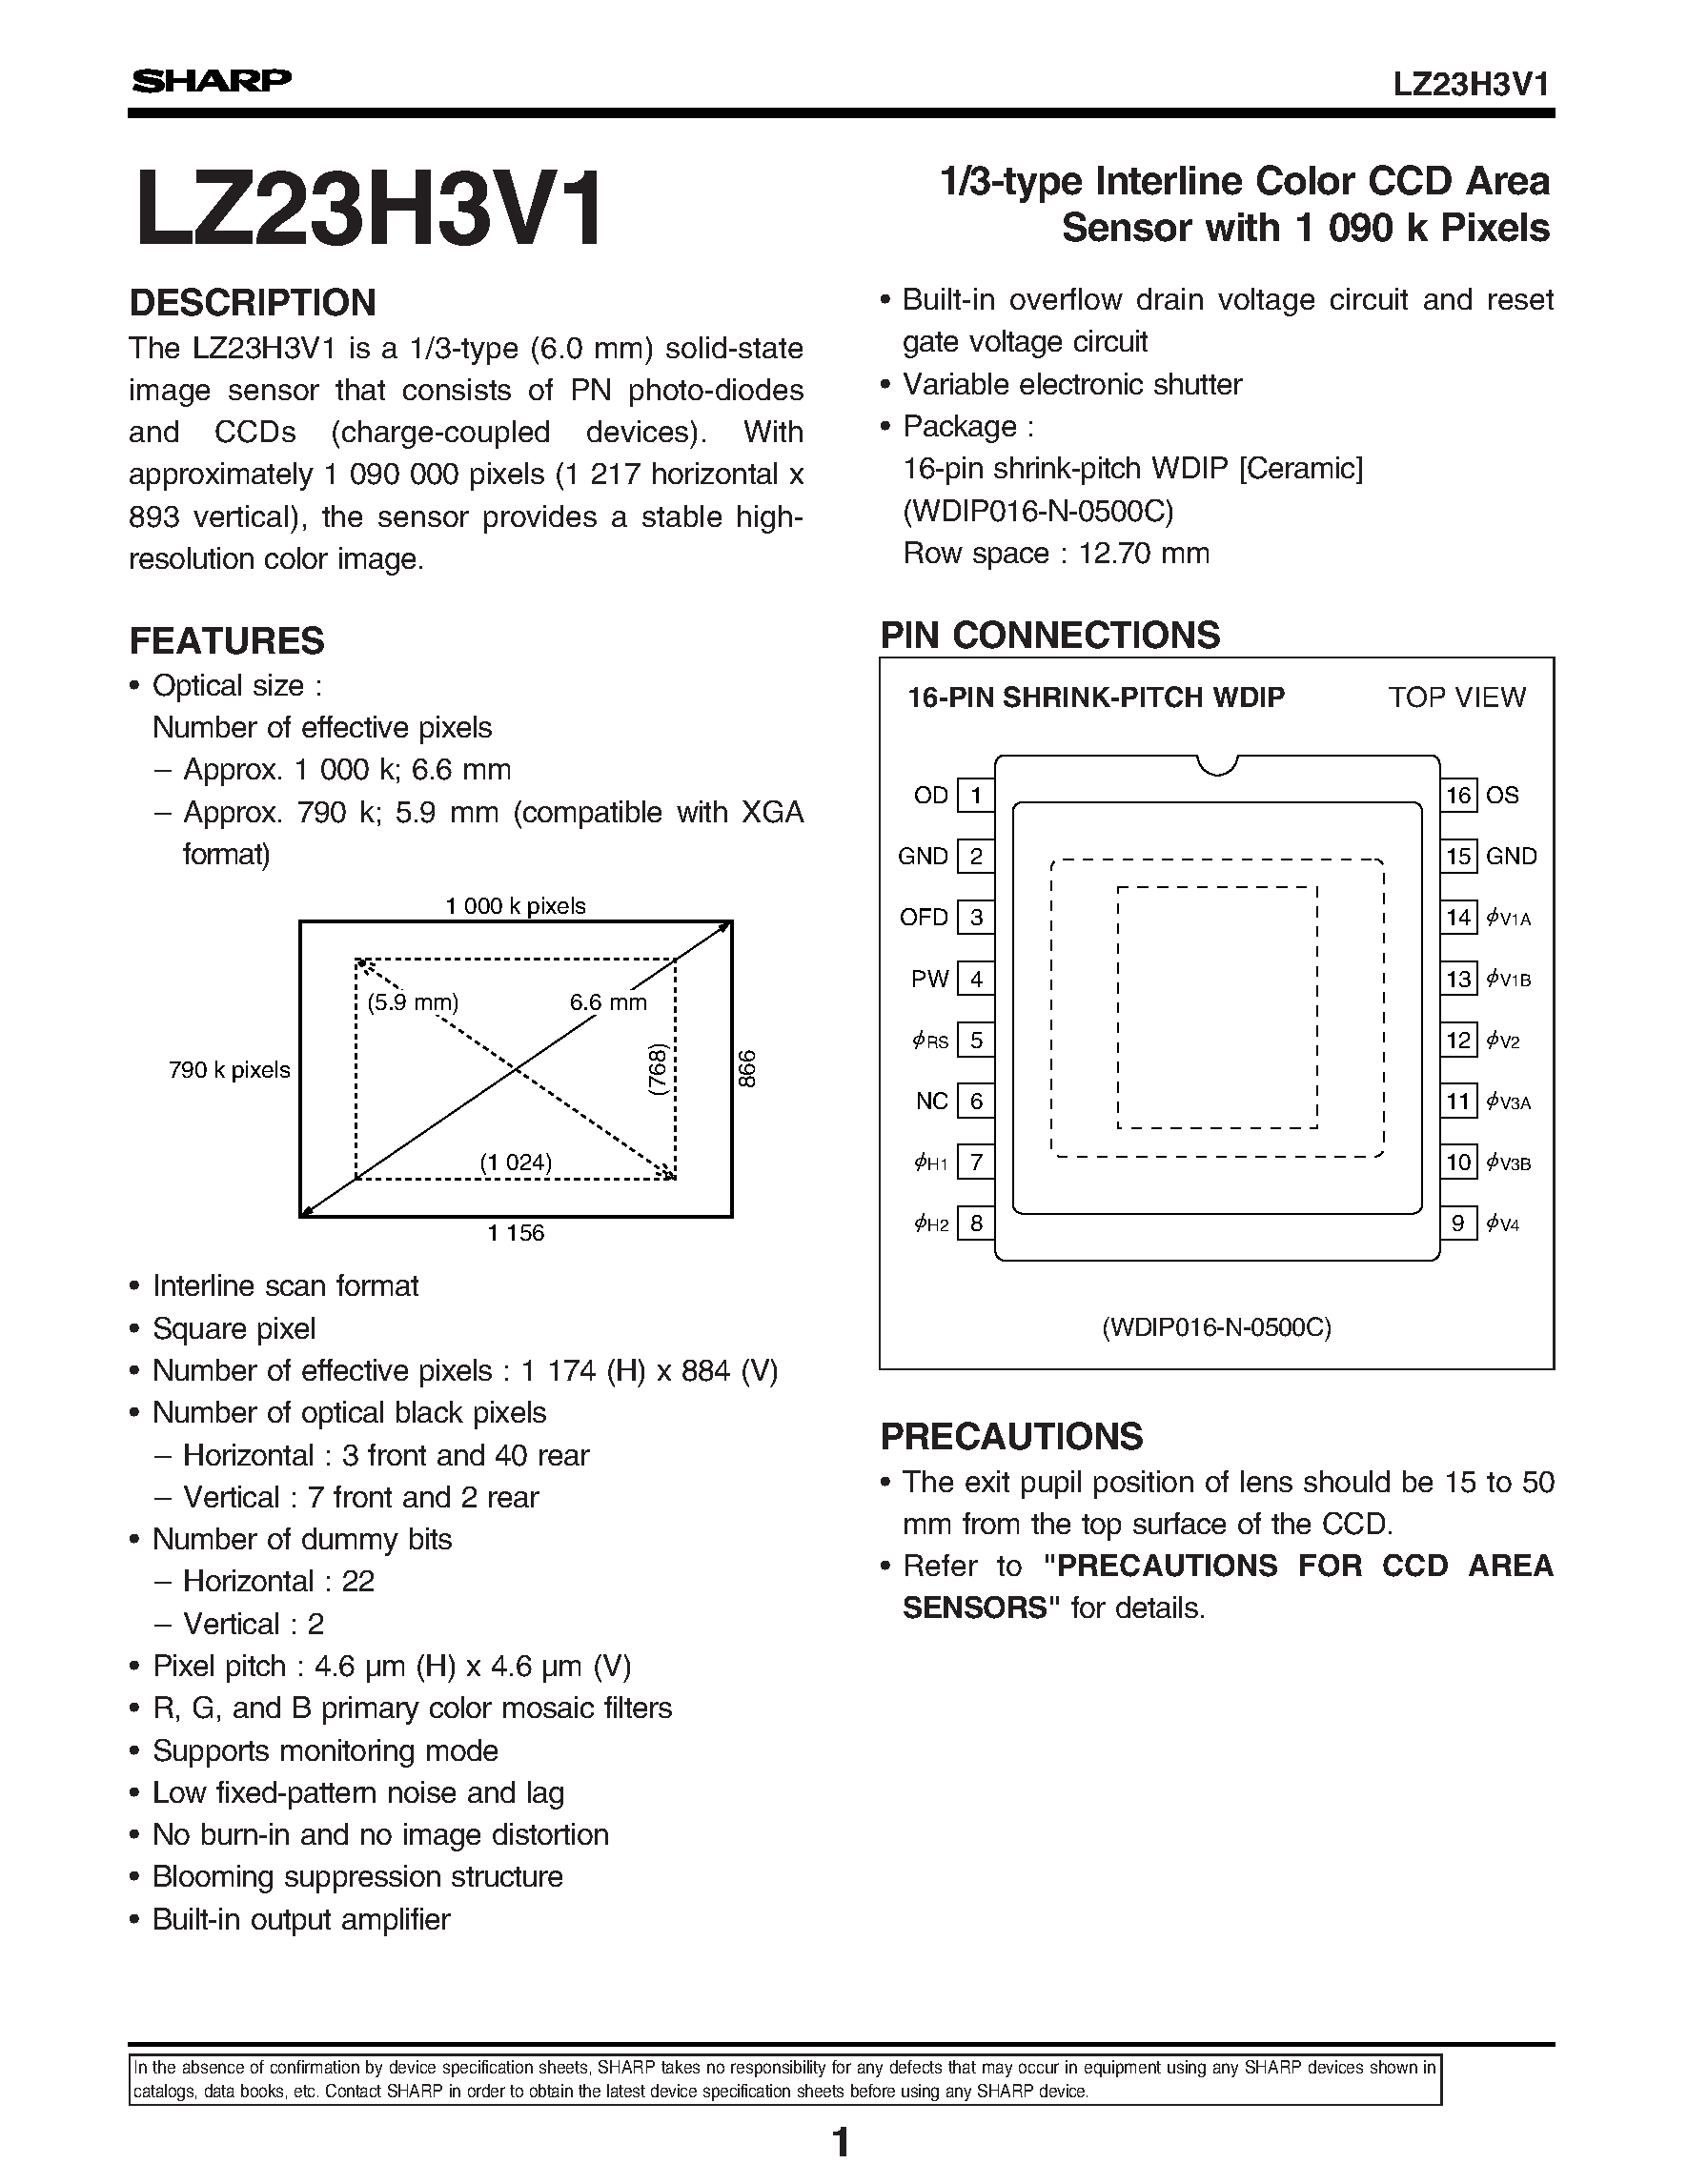 Datasheet LZ23H3V1 - 1/3-type Interline Color CCD Area Sensor with 1 090 k Pixels page 1